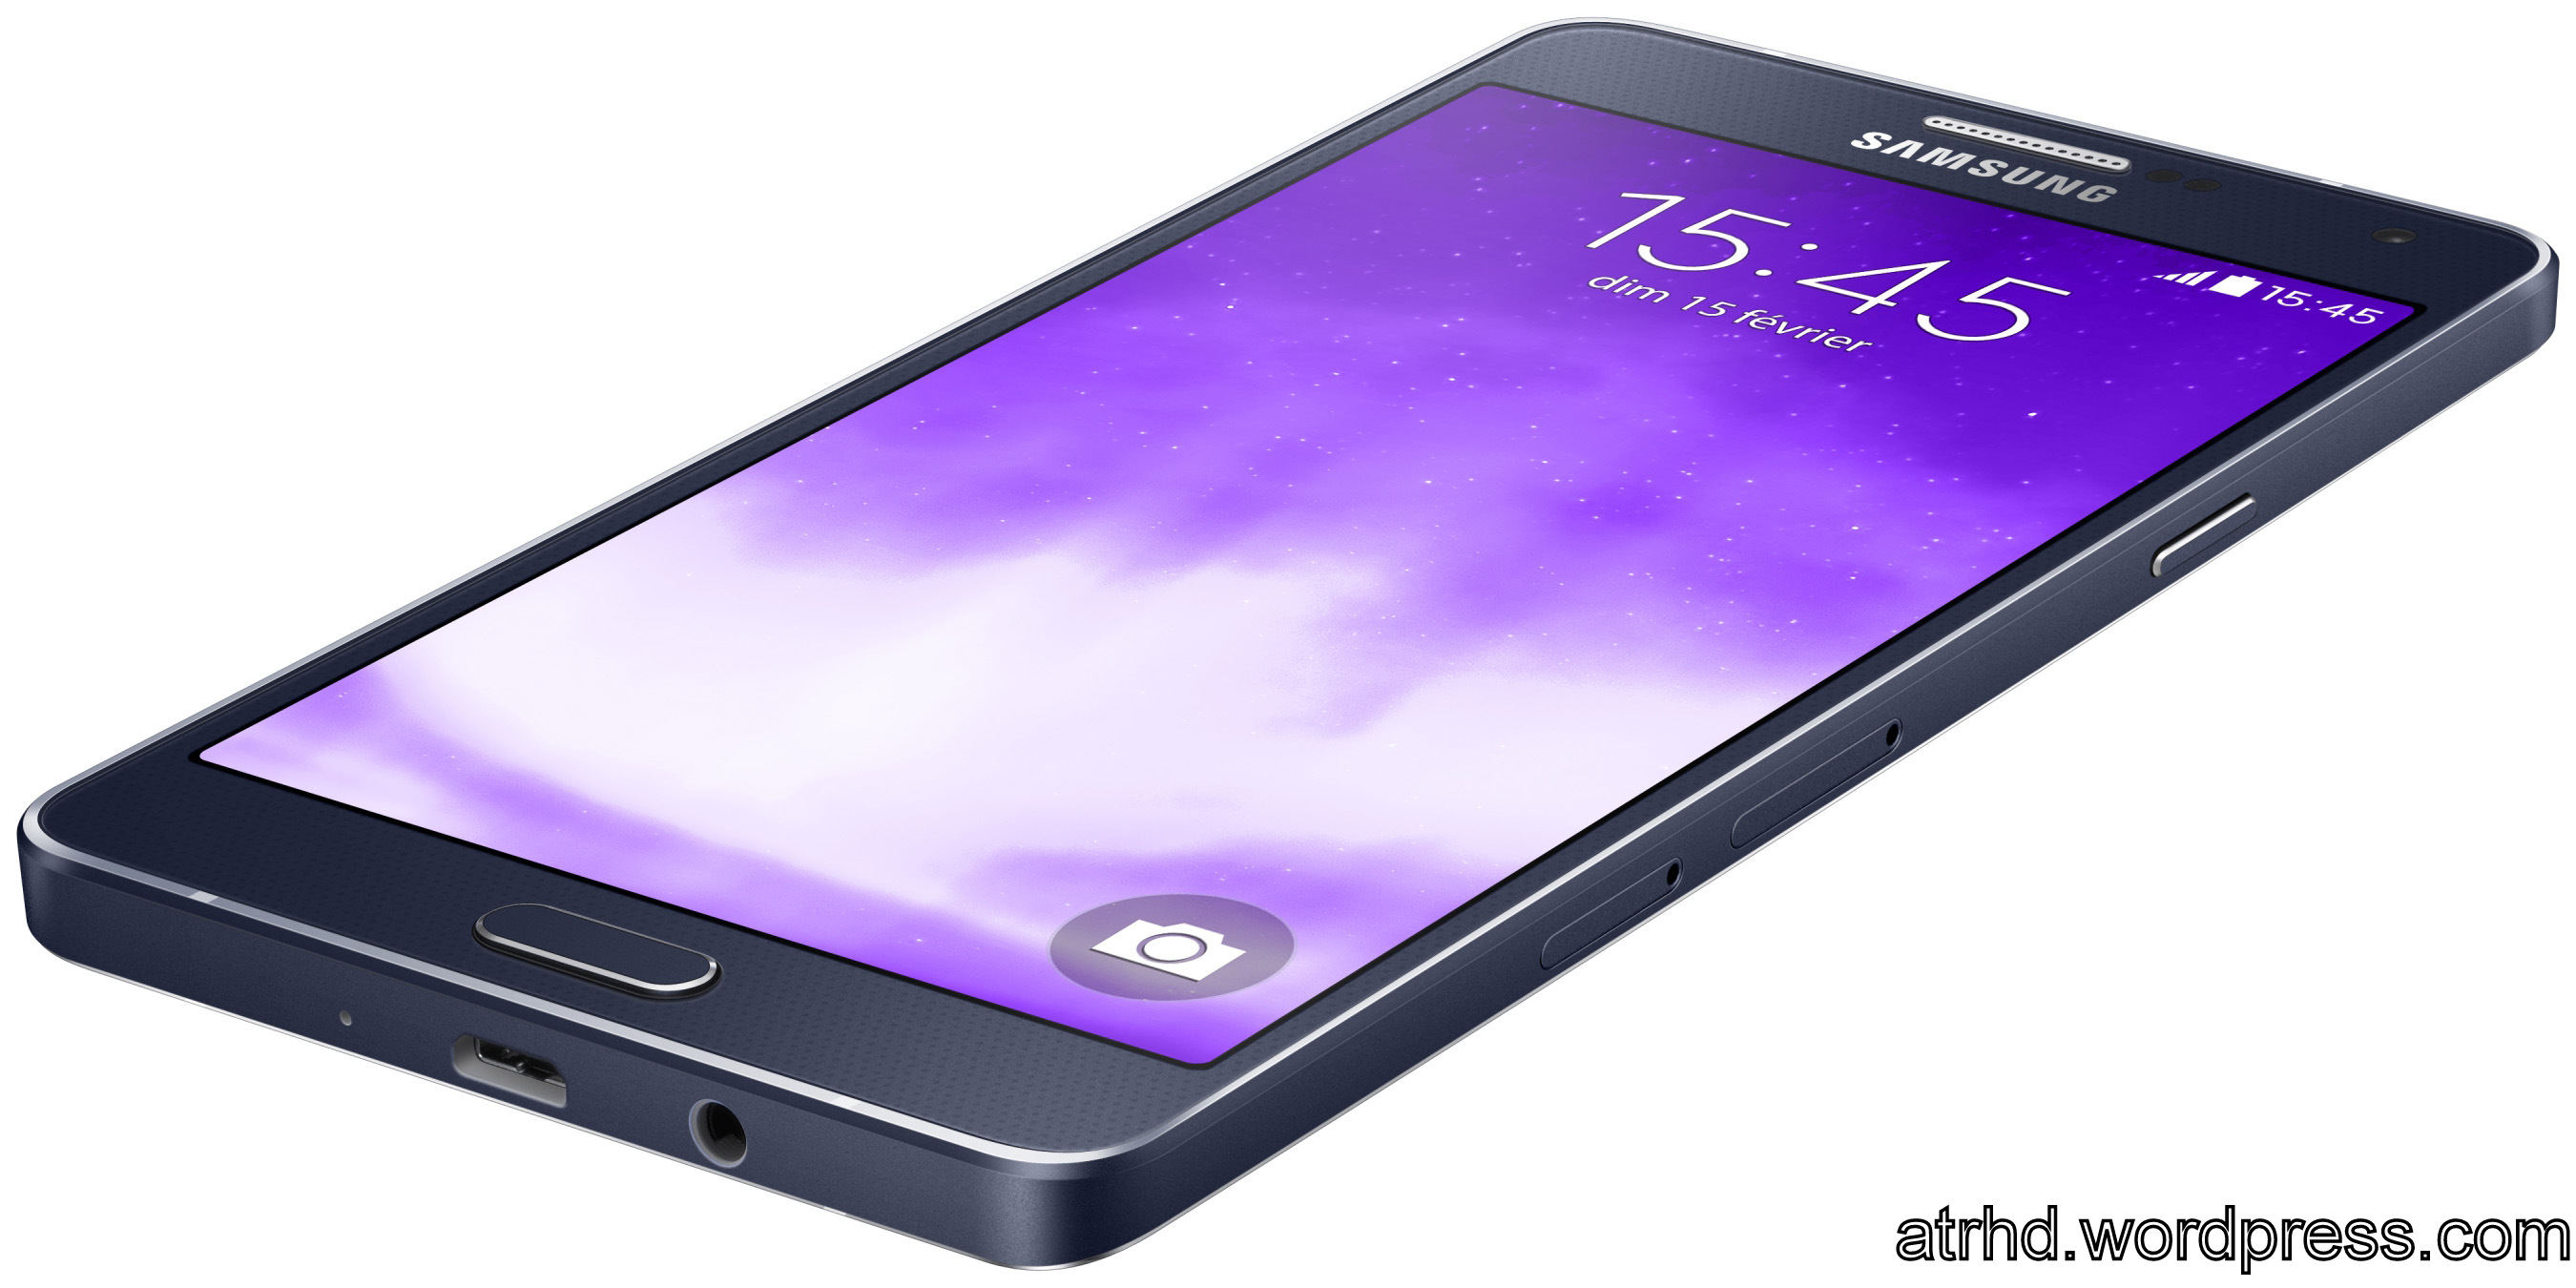 Samsung Galaxy A7 – At